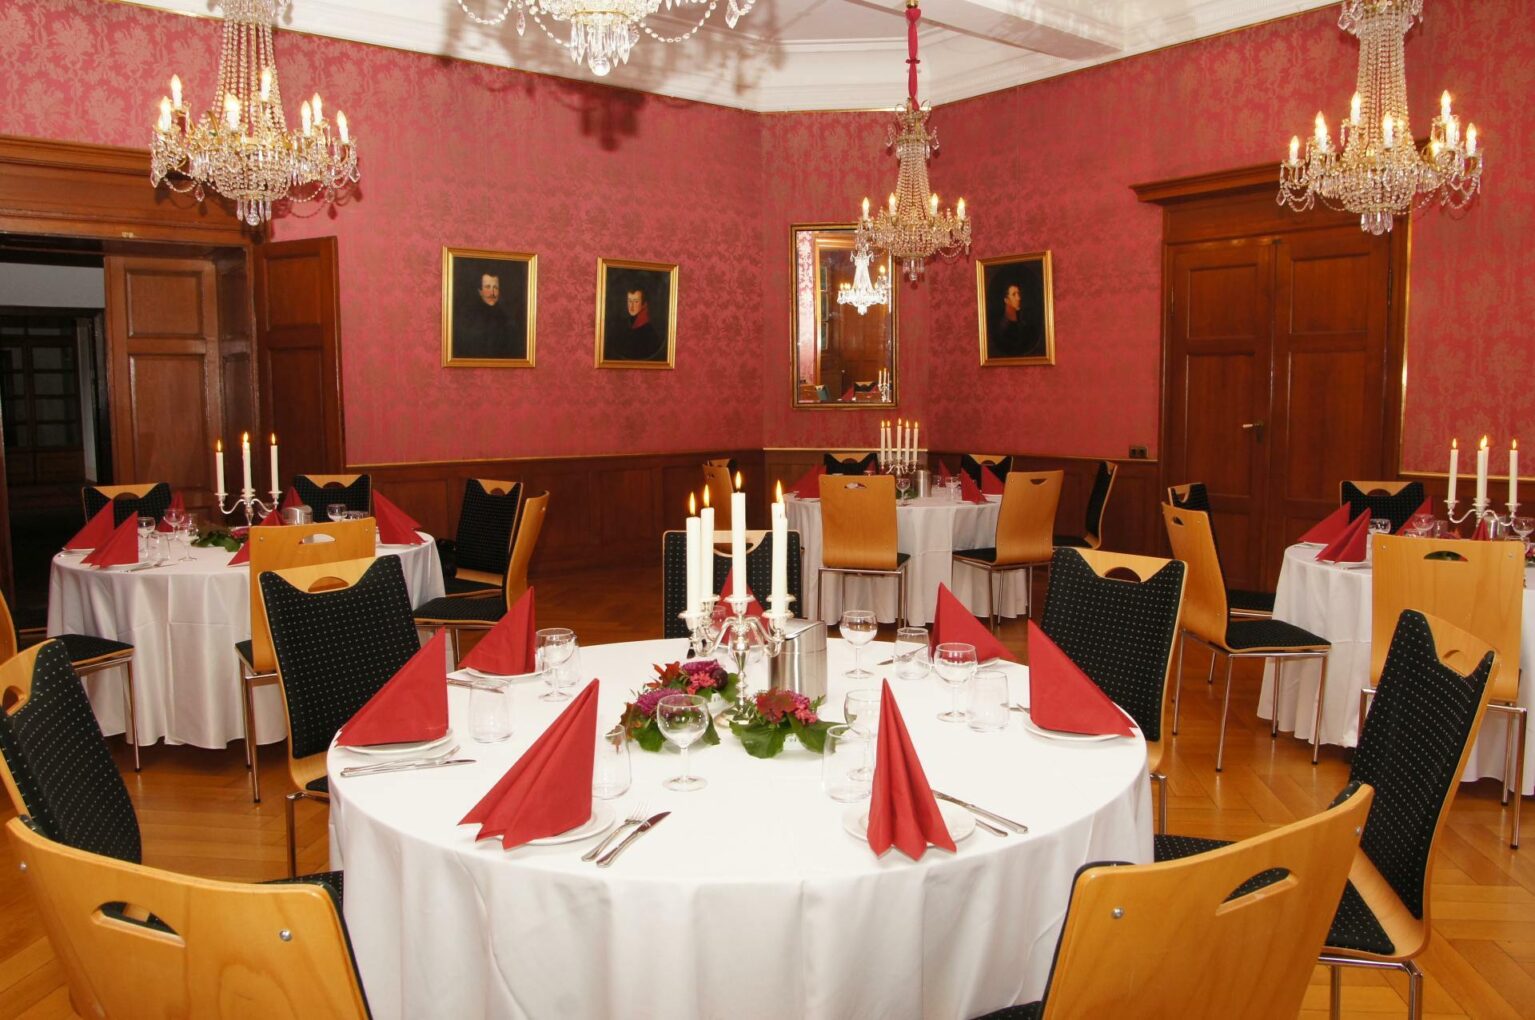 Der Louissaal in Schloss Homburg mit festlich dekorierten Tischen